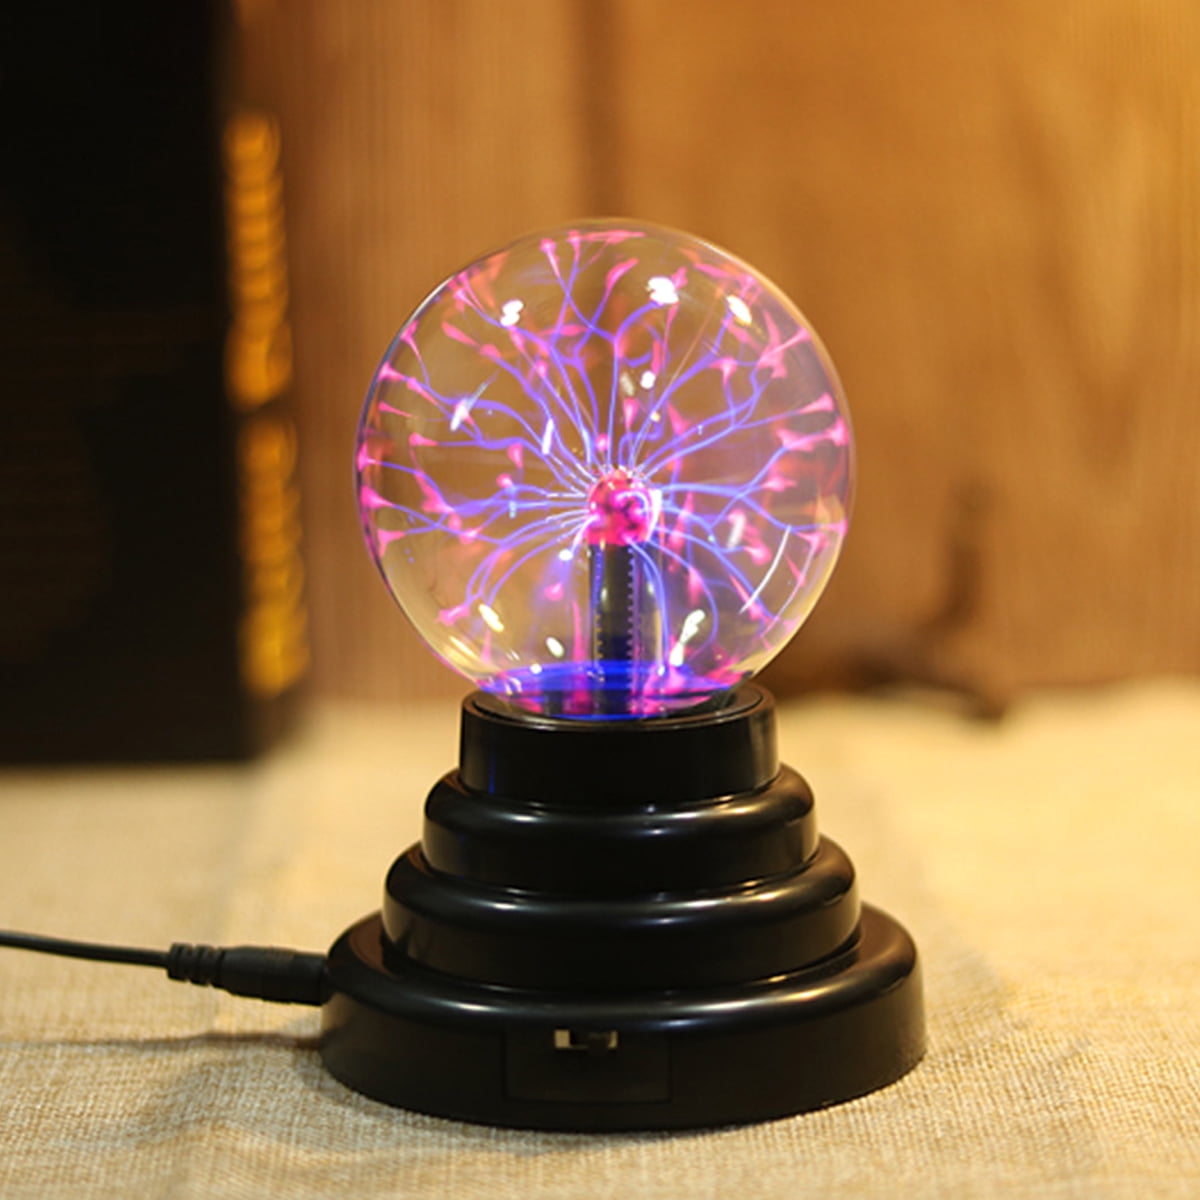 Светящаяся плазма. Плазменный шар Тесла. Bola de Plasma светильник. Электрический шар. Плазменная лампа.